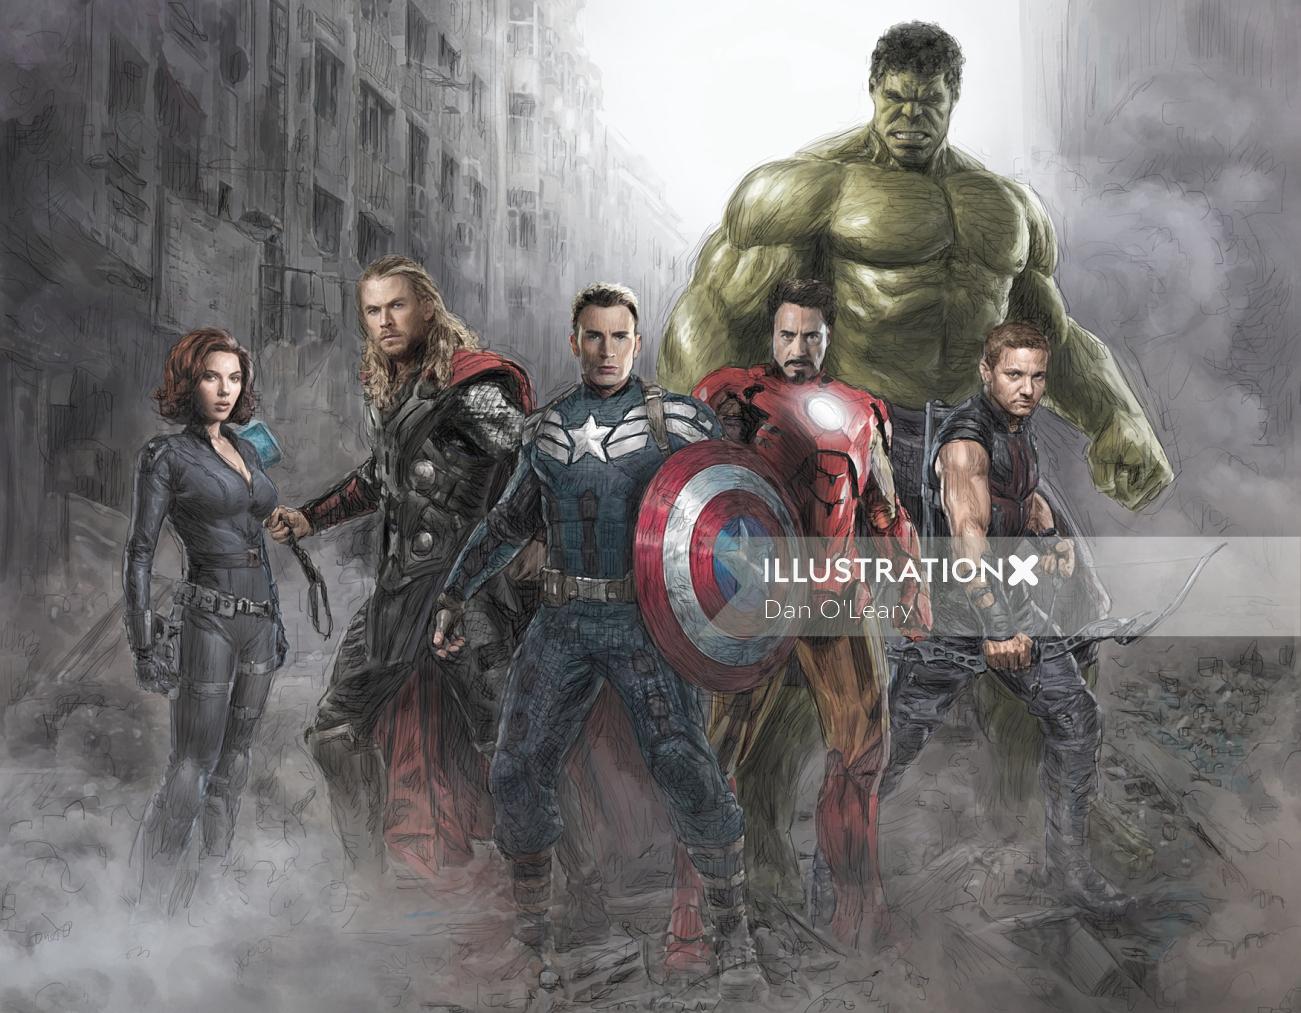 The Avengers fantasy poster
